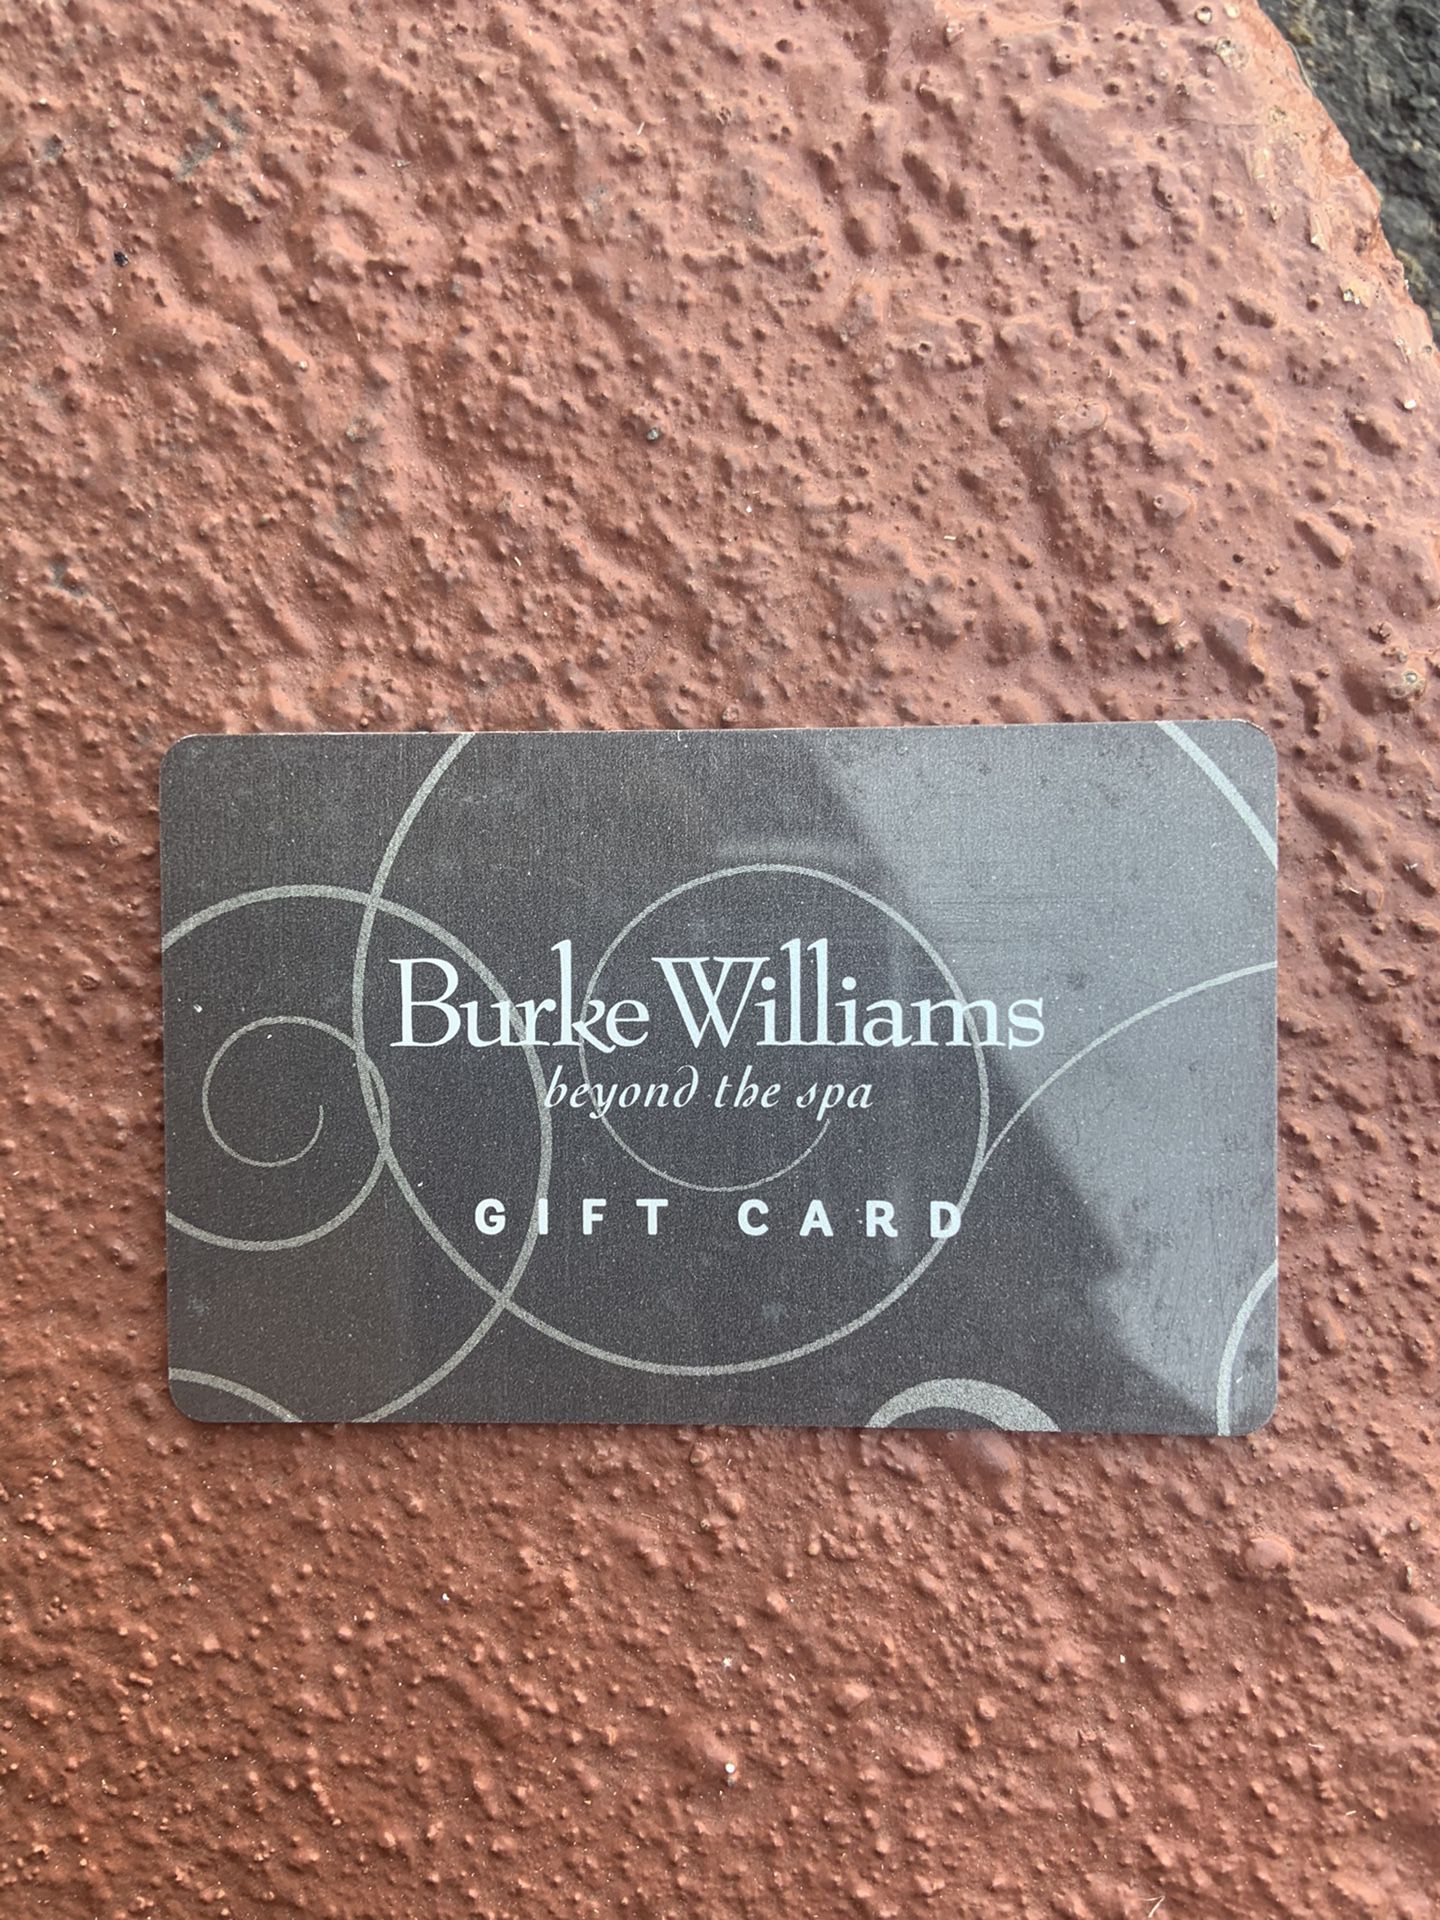 Burke Williams card 300 on it